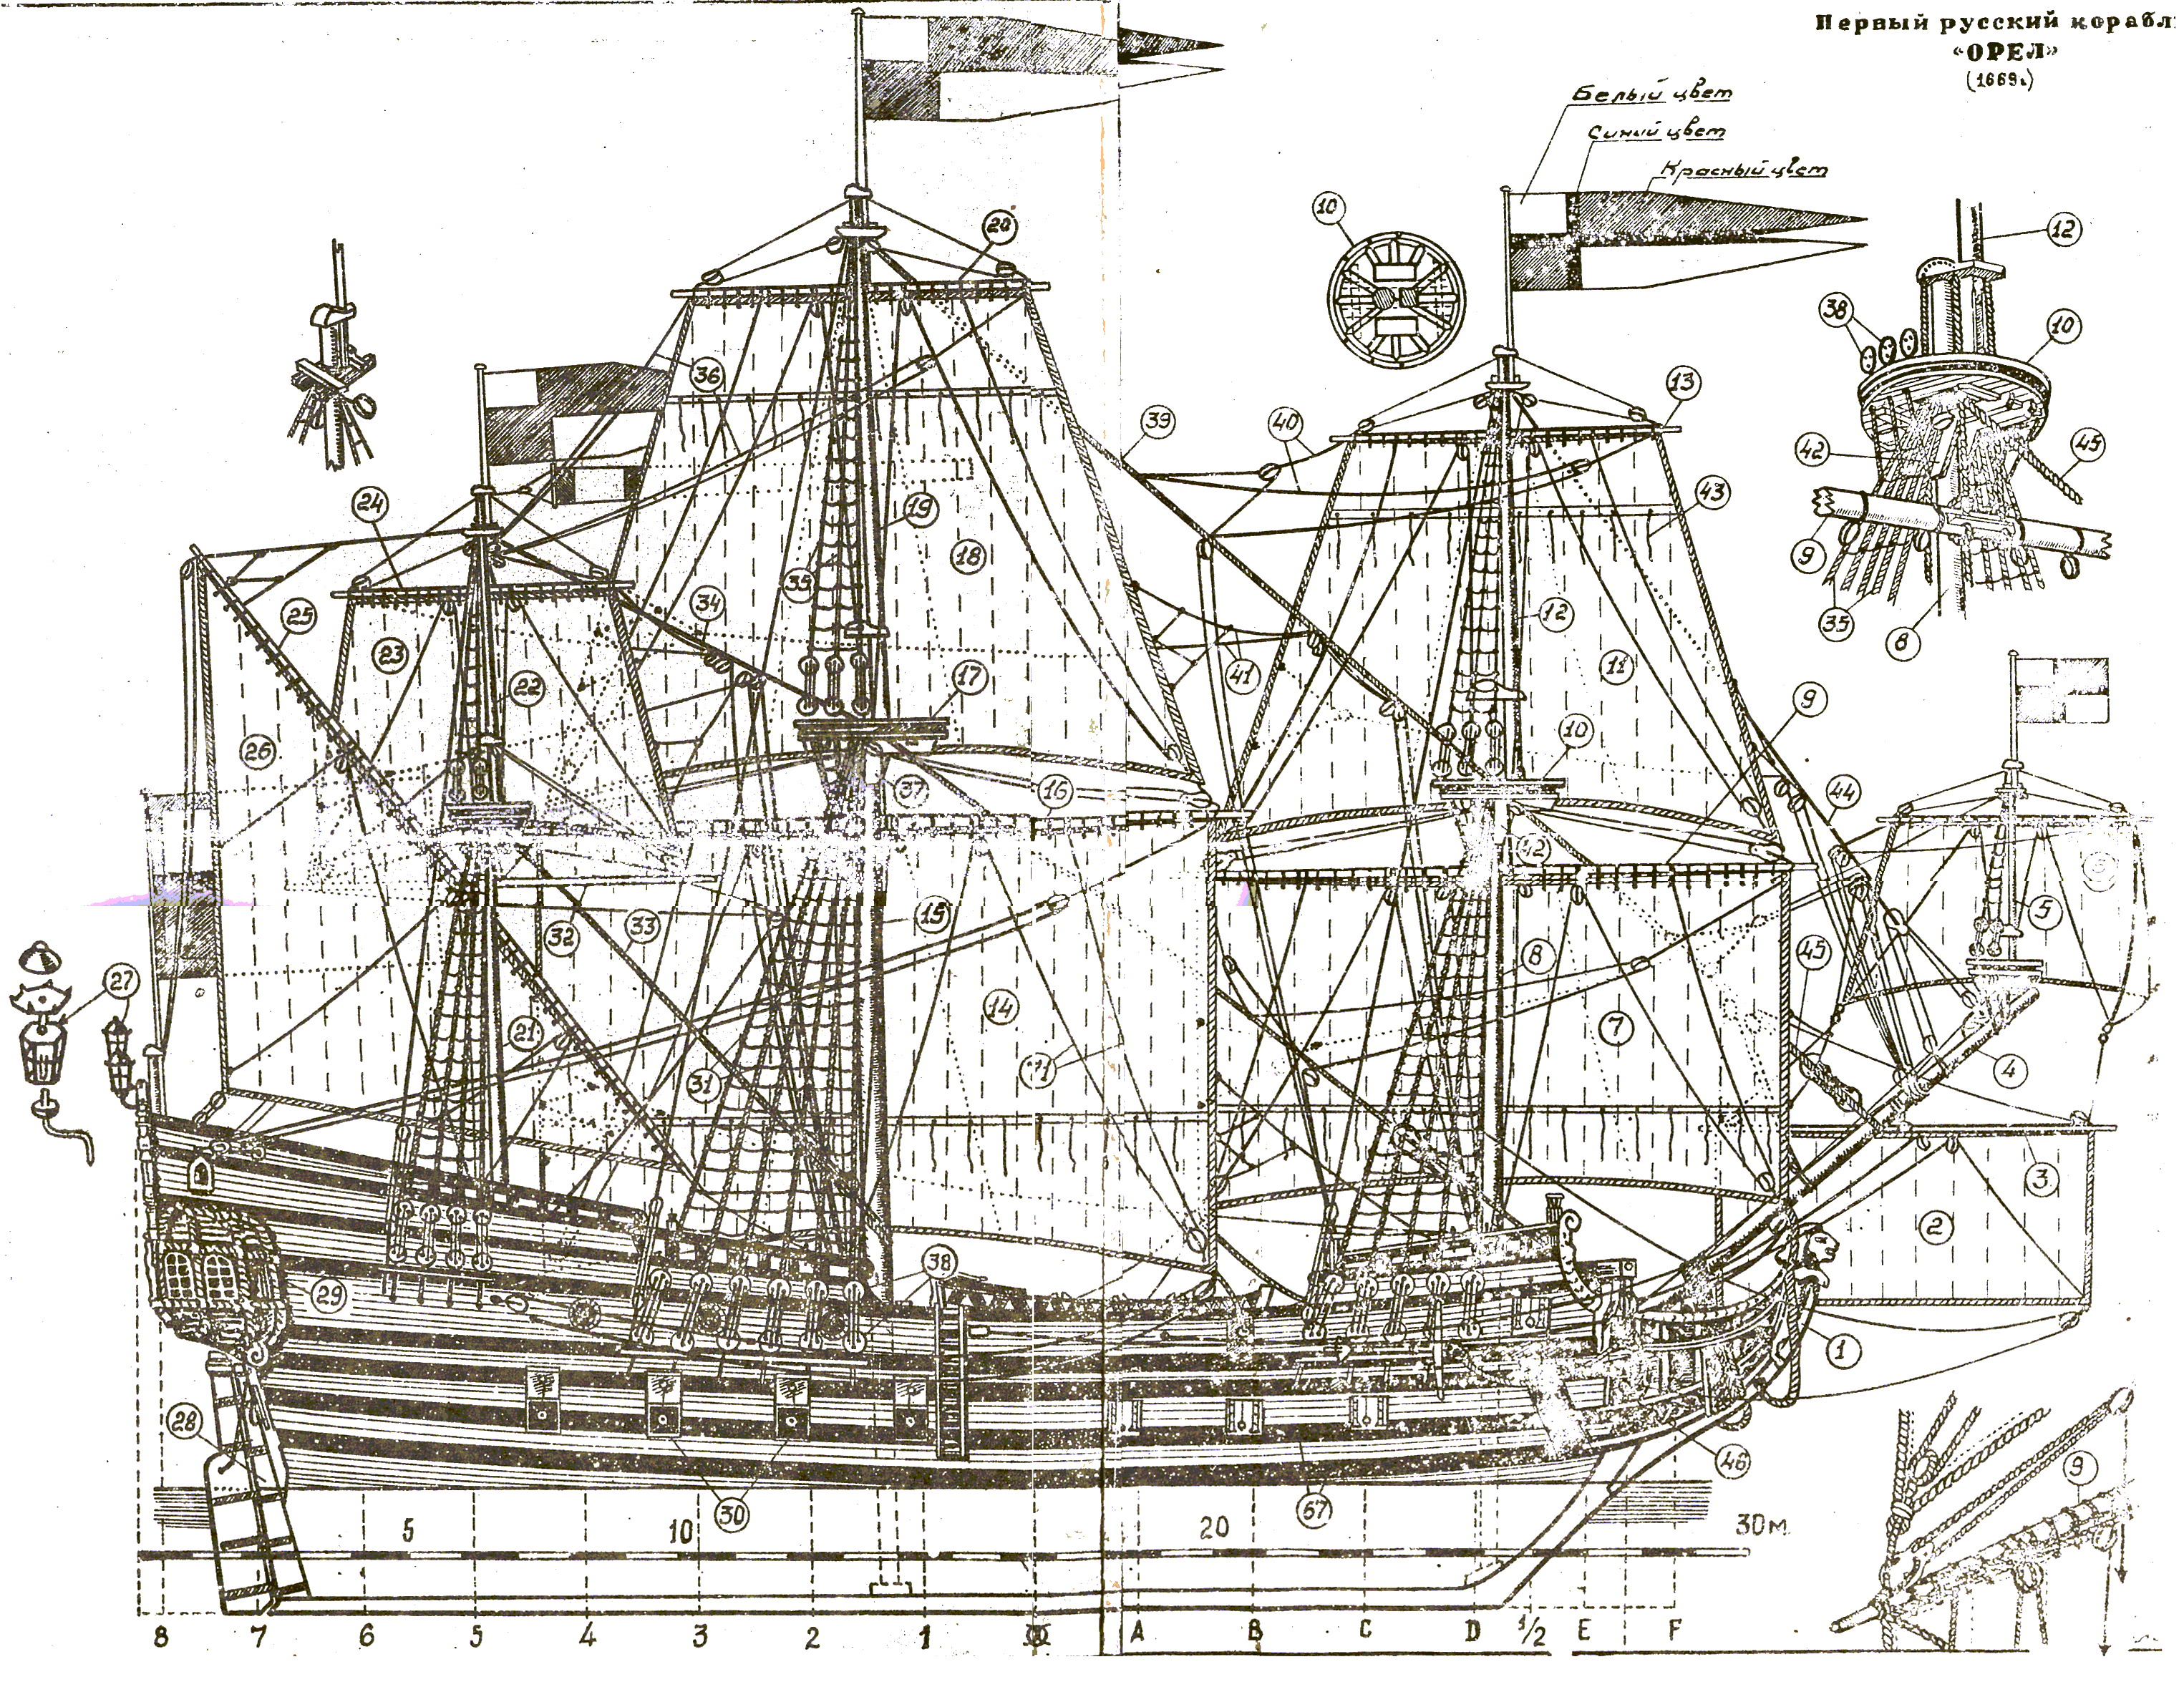 Фрегат чертеж. Фрегат Орел 1668 чертежи. Фрегат Орел 1668 модель. Фрегат 17 века чертежи. Парусные корабли 17 века чертежи.